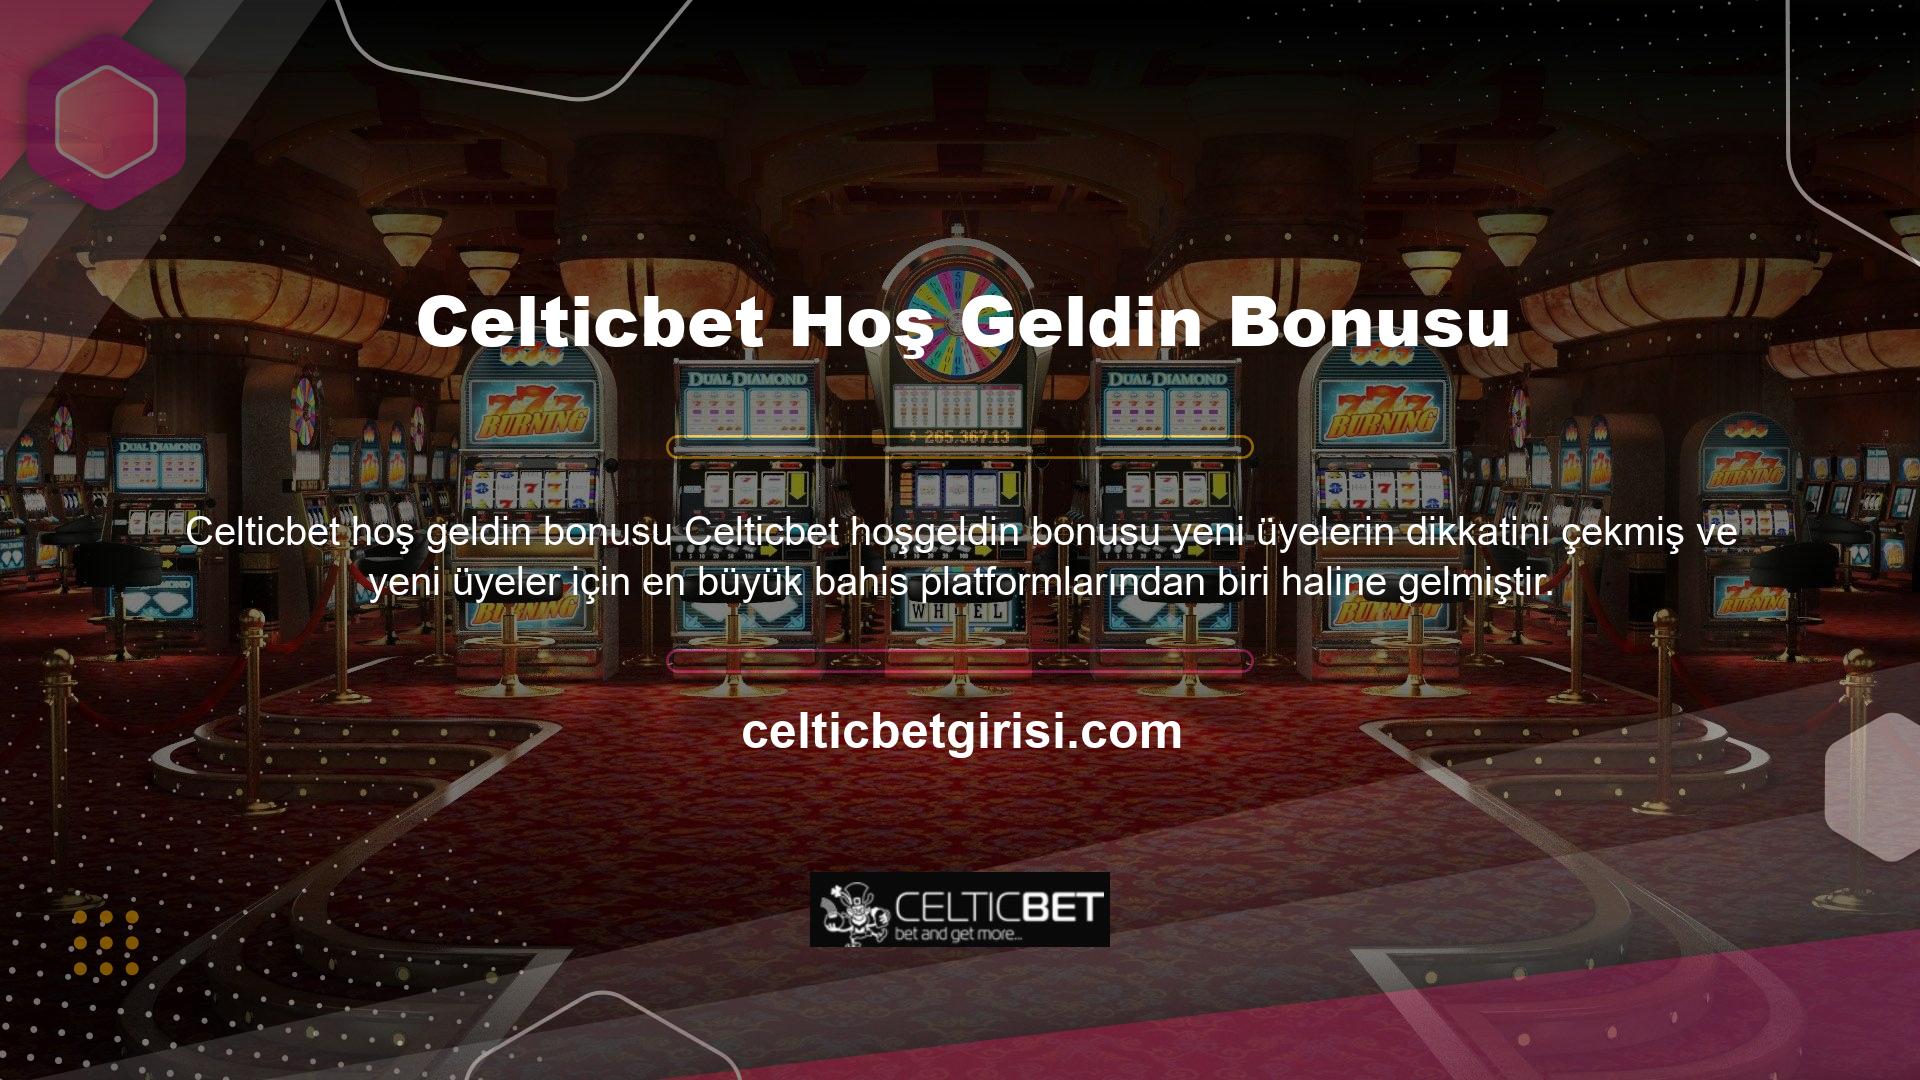 Celticbet hoş geldin bonusu bahis sitesi farklı türde hoş geldin bonusları sunmaktadır